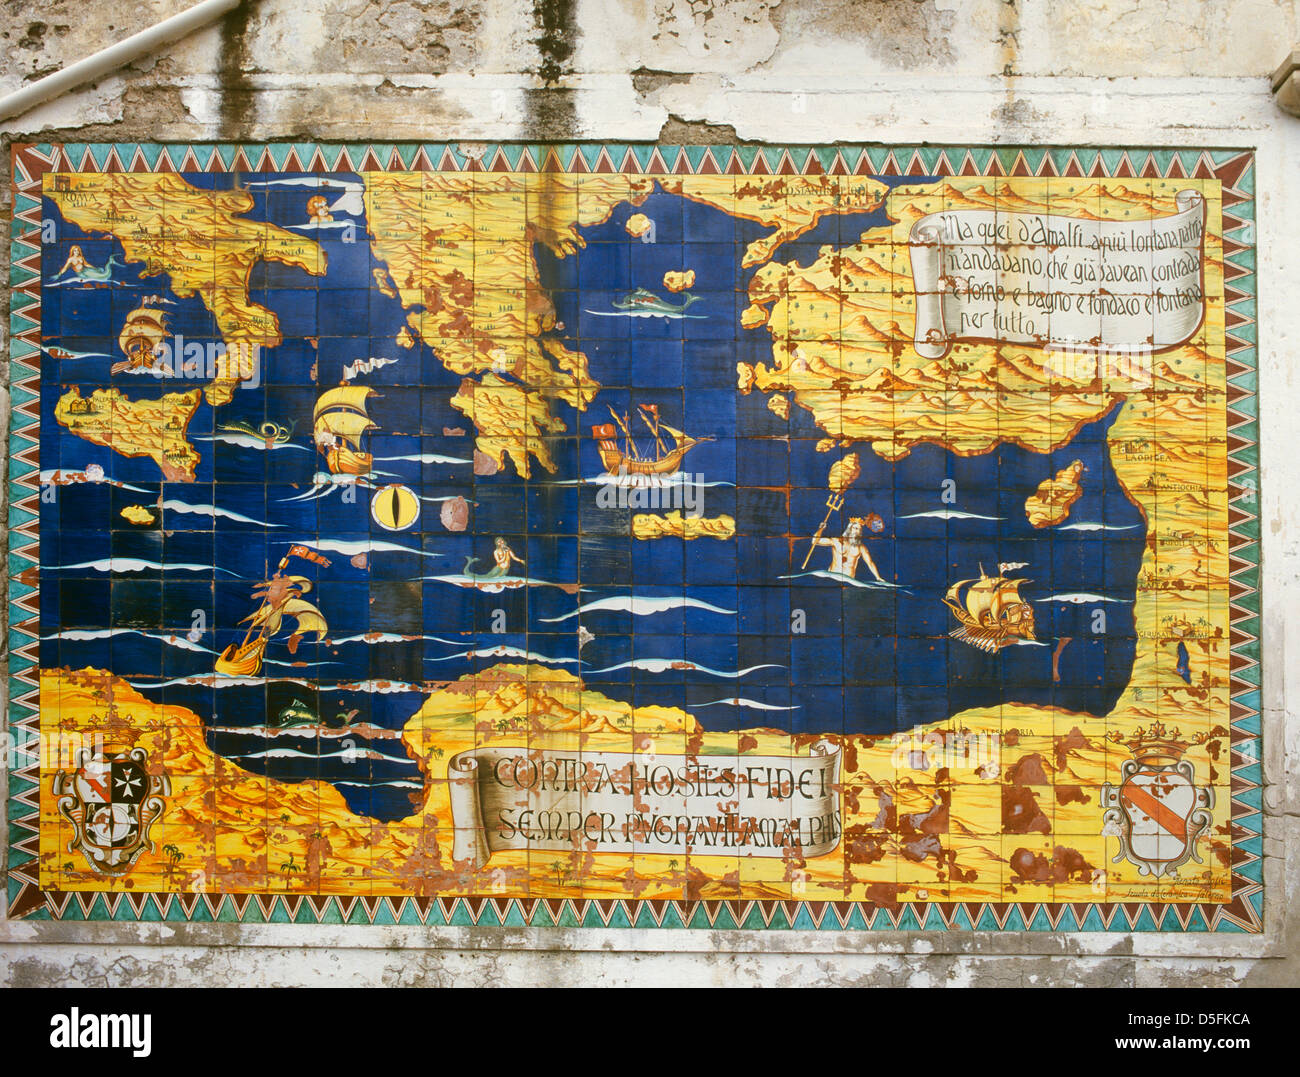 Italie Campanie Côte Amalfitaine Amalfi la reproduction de carreaux de céramique de l'ancienne carte nautique Banque D'Images